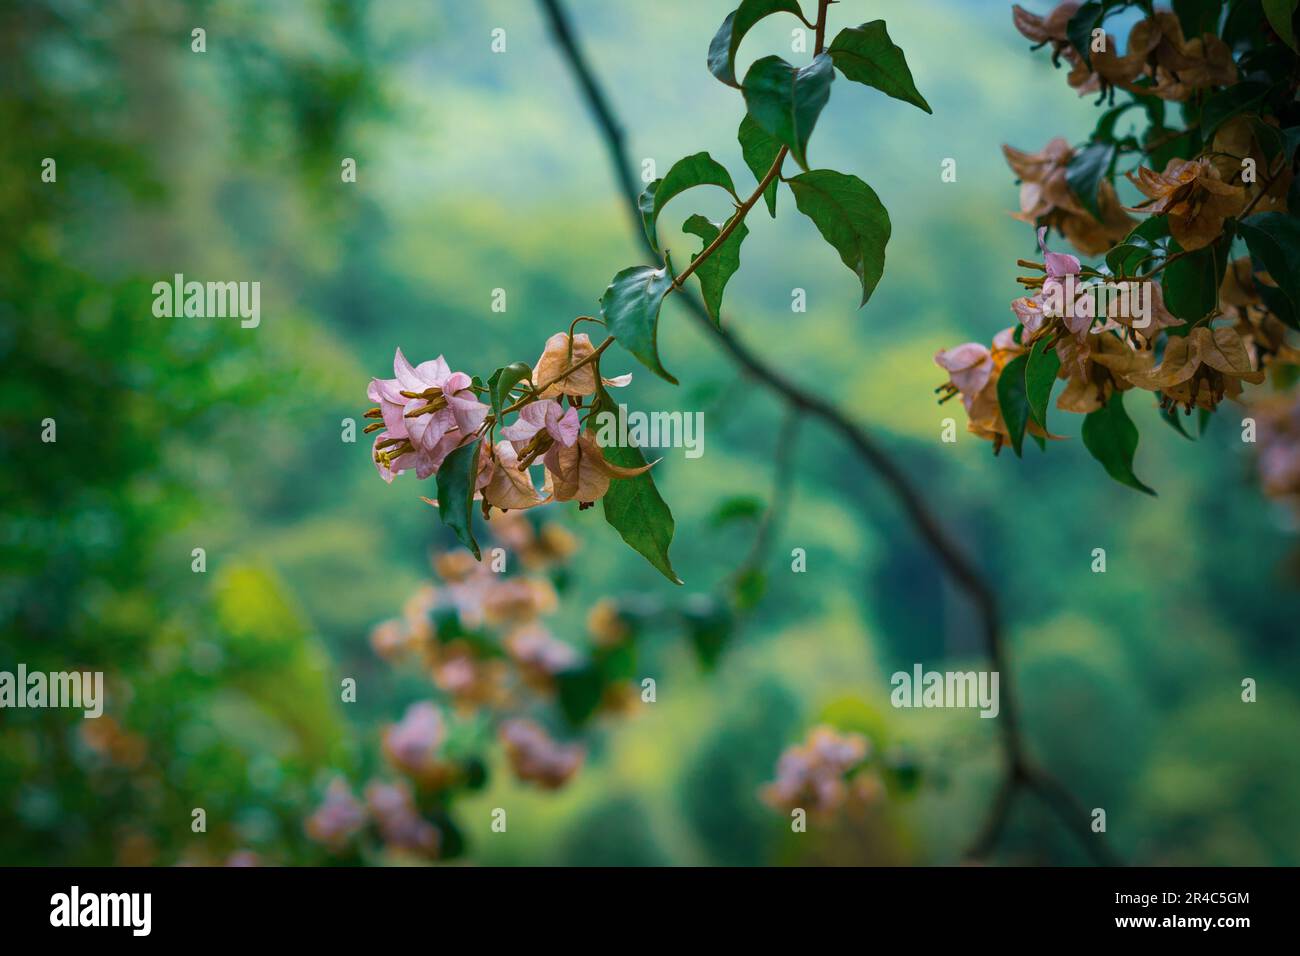 Questa immagine presenta un ramo di fiori delicati adagiato su uno sfondo scenografico di colline ondulate Foto Stock